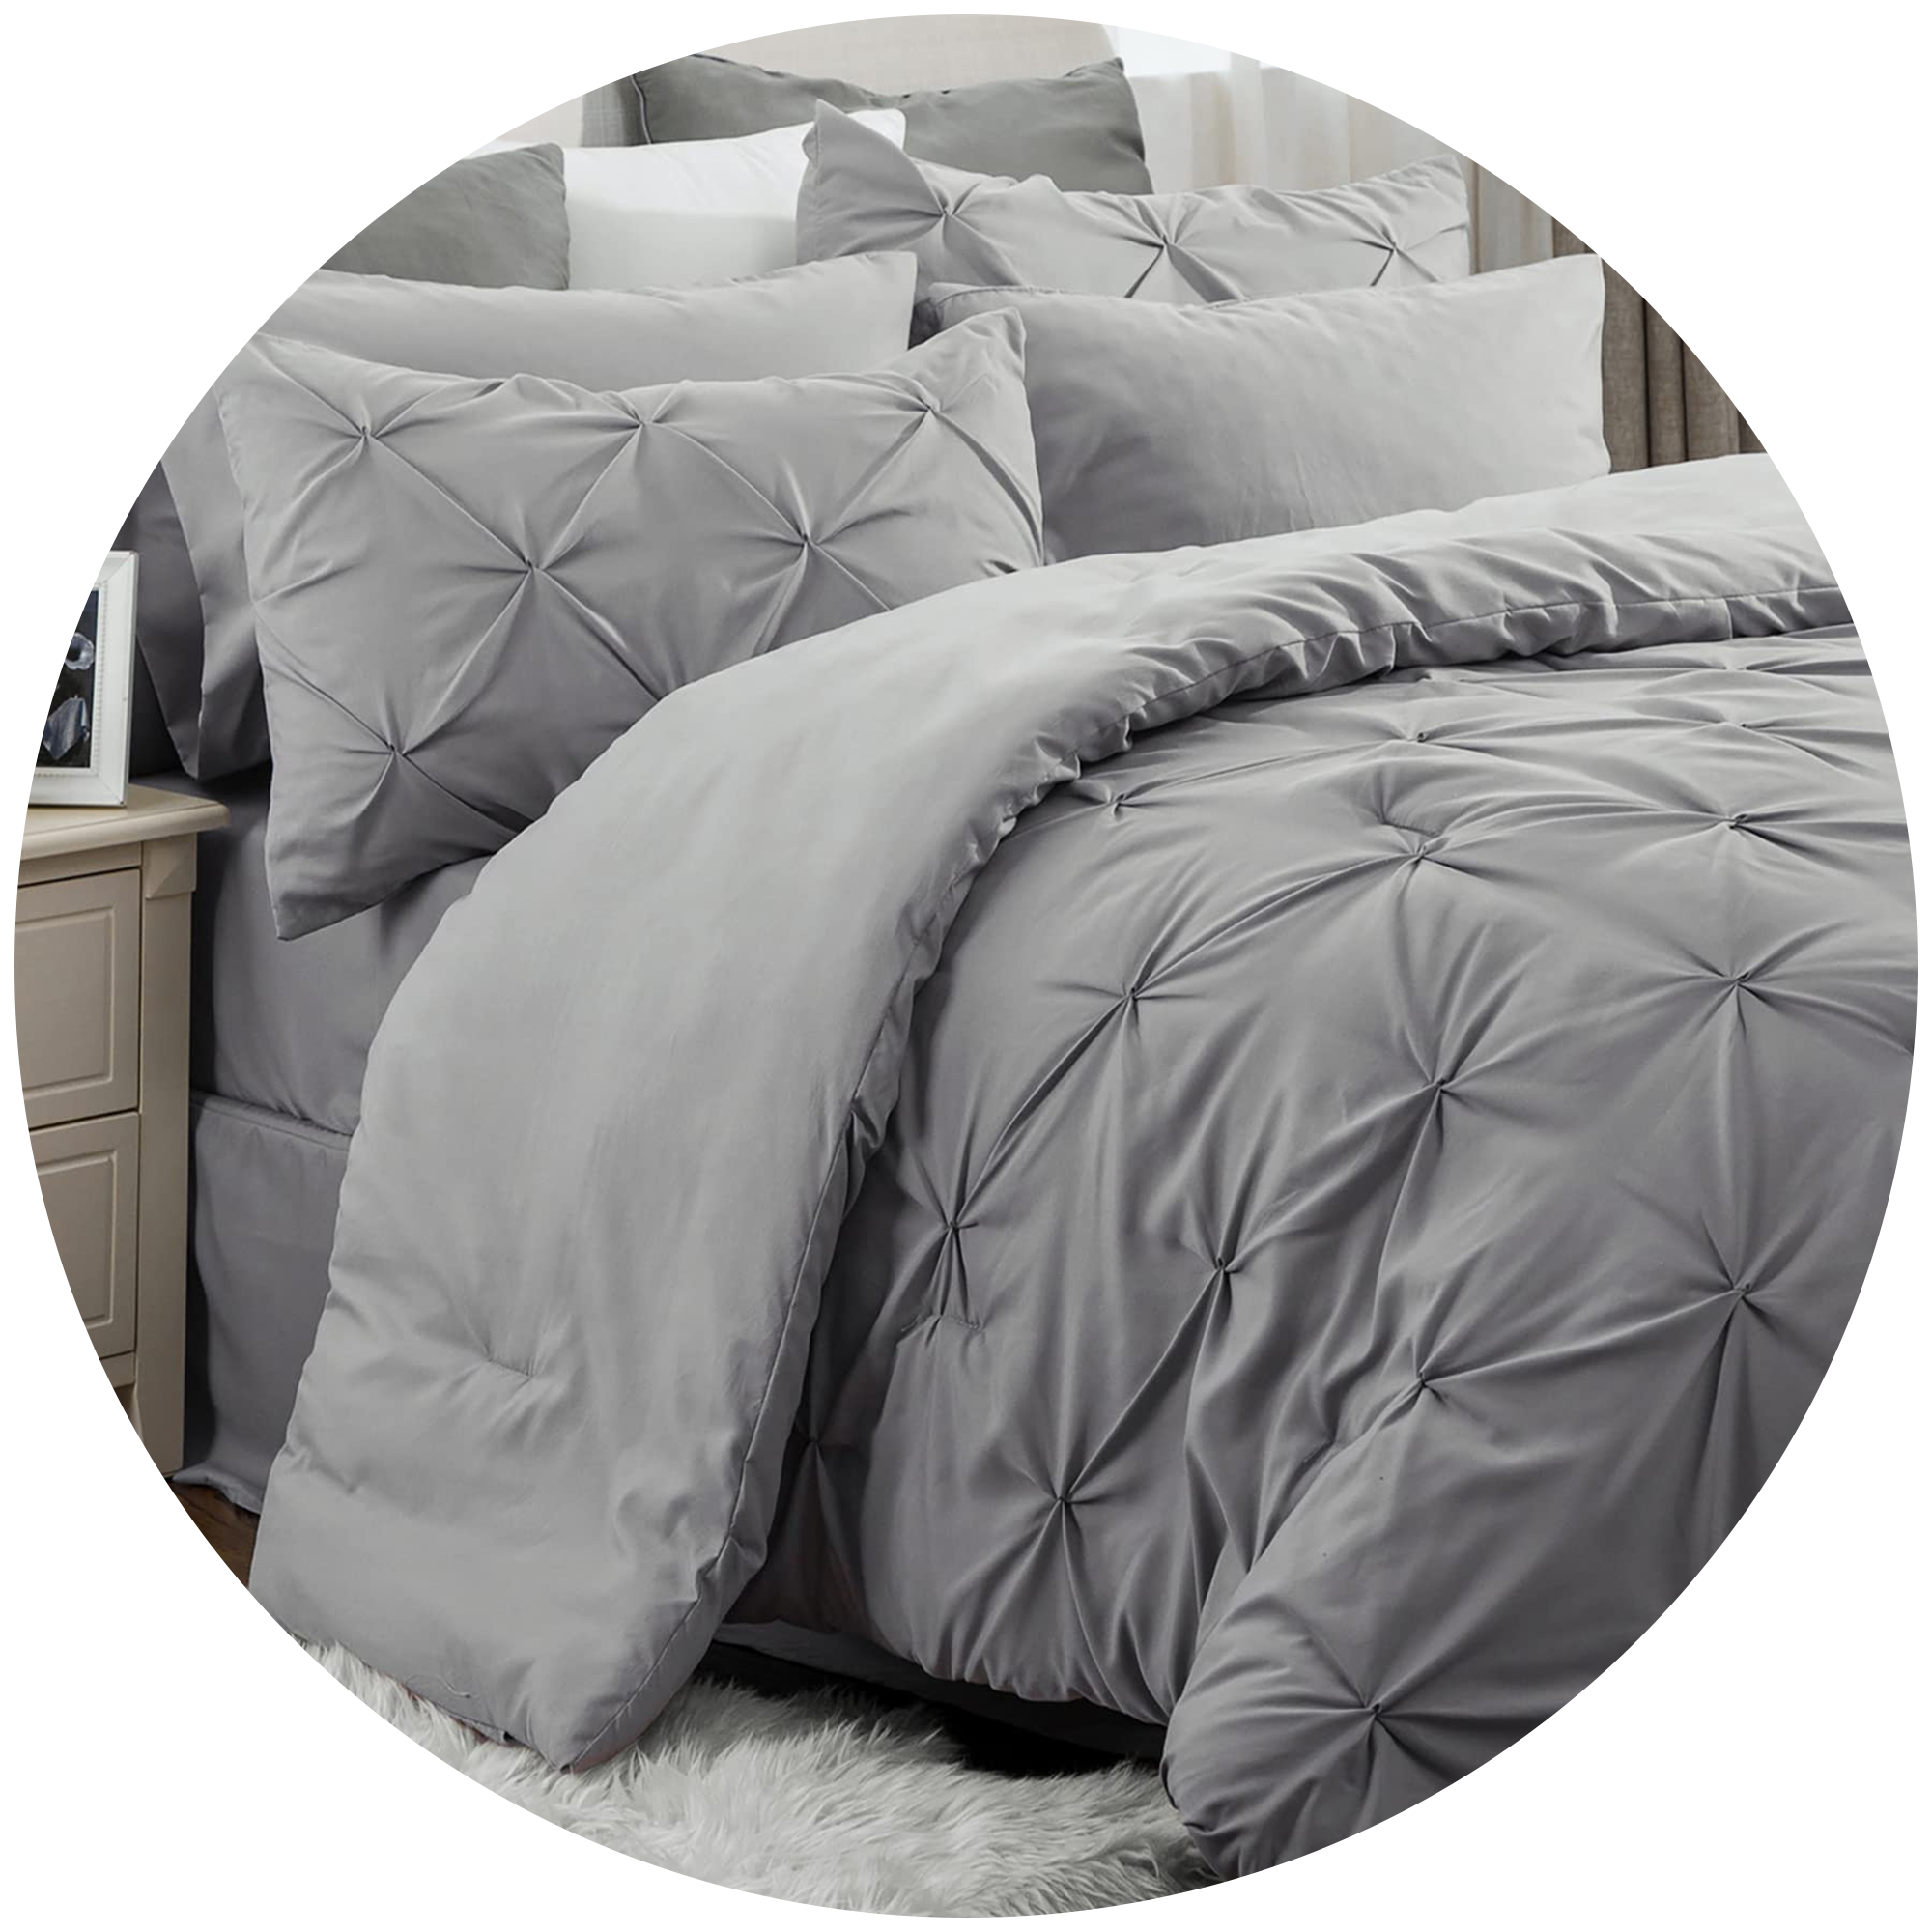 Comforters – TrueValue